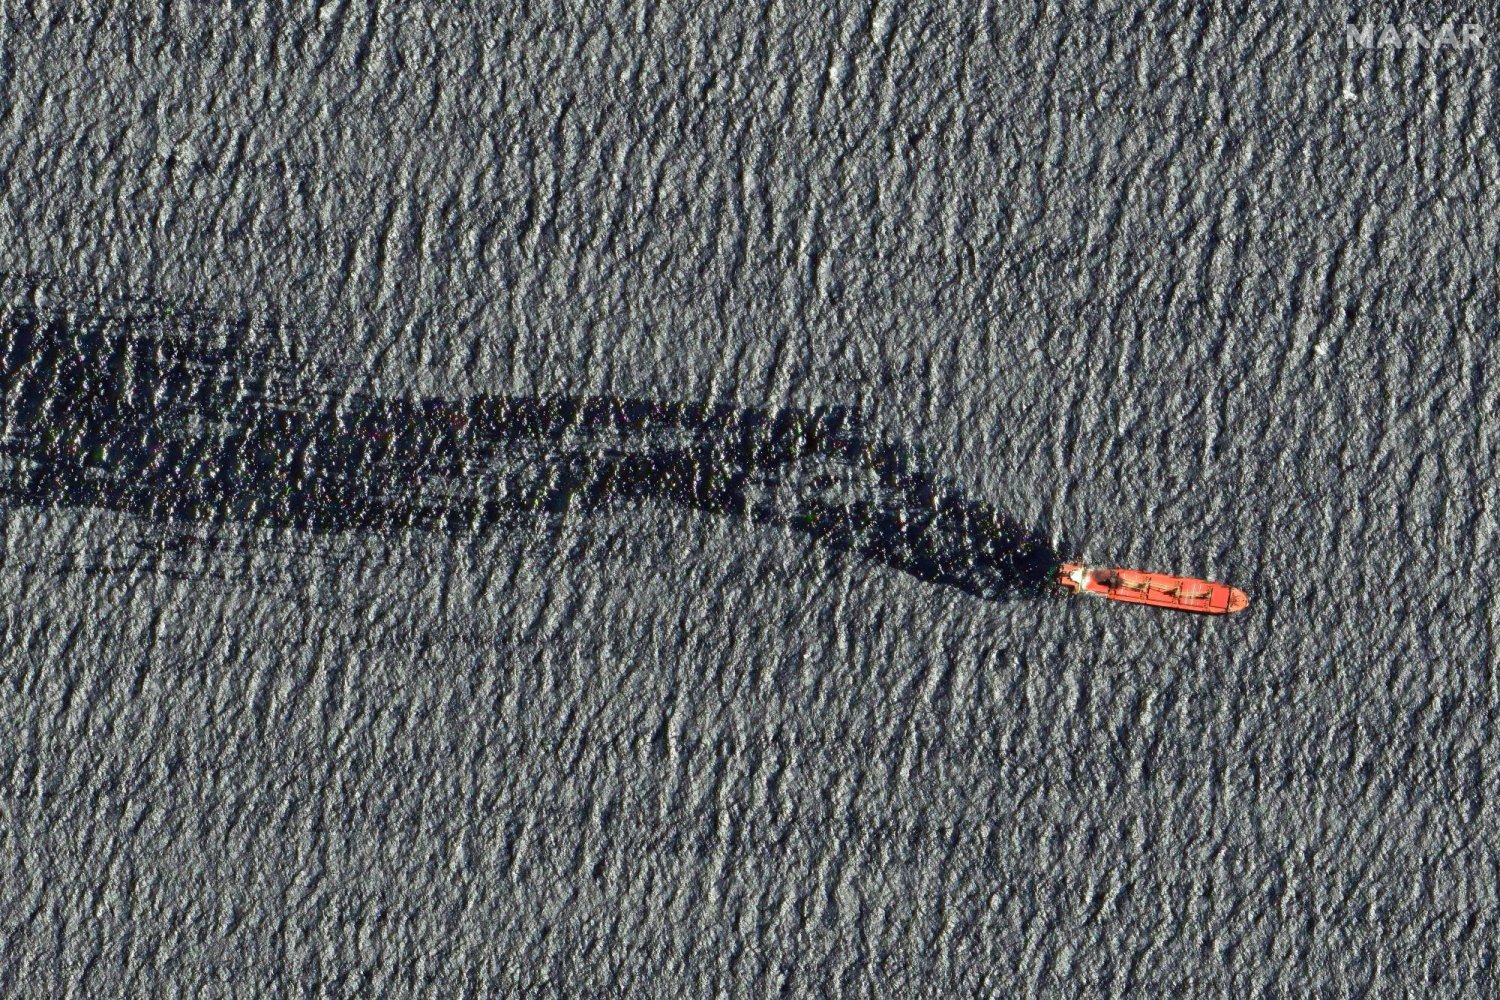 صورة التقطها قمر اصطناعي وزعتها مؤسسة "ماكسار تكنولوجي"  أمس تظهر سفينة "روبيمار" تنضح بما فيها قبل غرقها (أ.ف.ب)